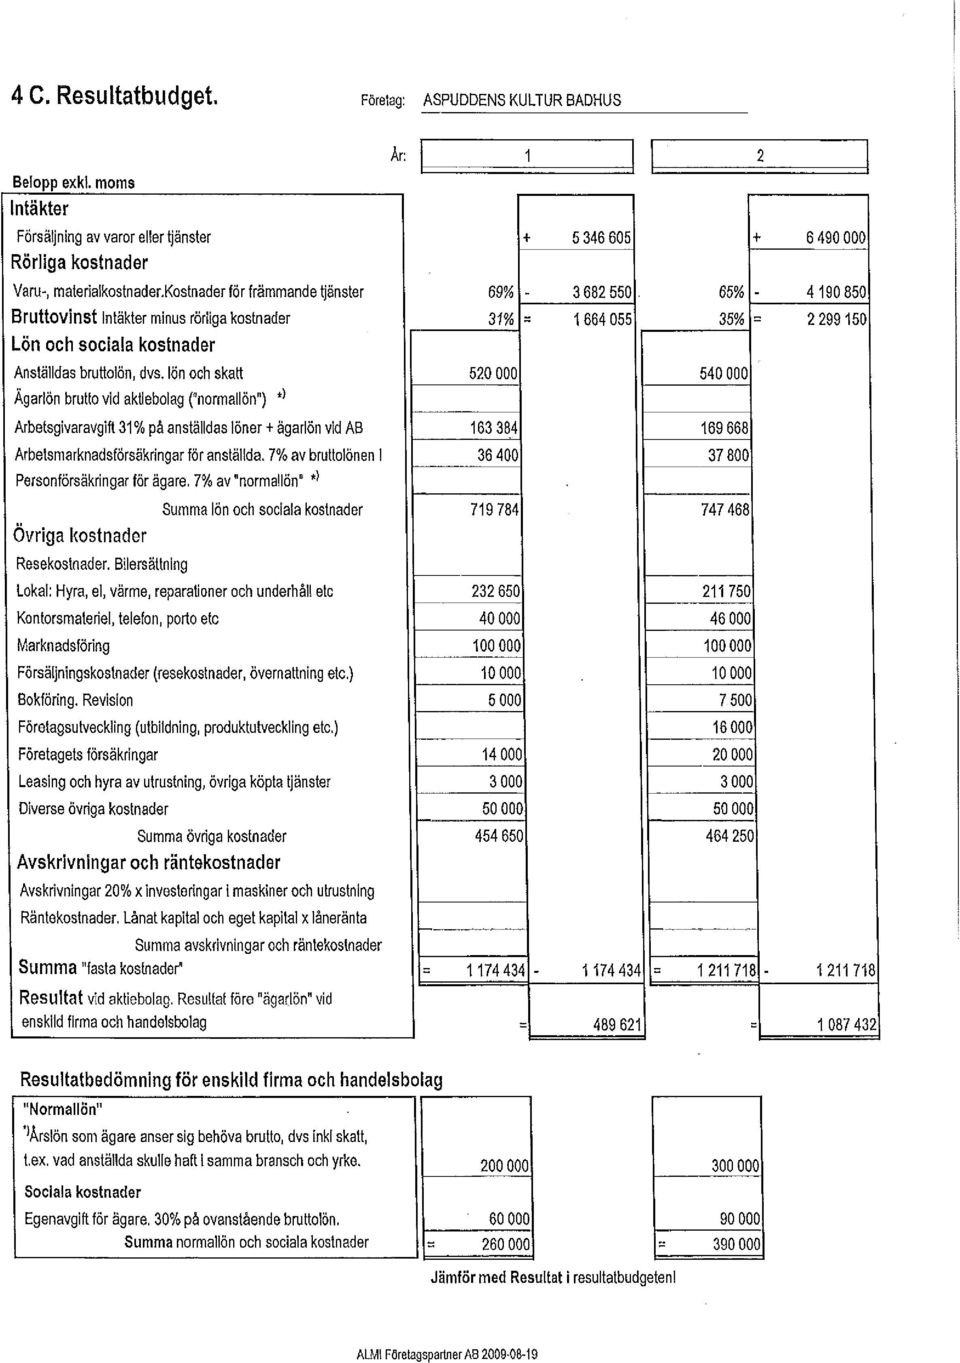 lön och skatt 520 000 540 000 Ägarlön brutto vid aktiebolag {"normallön") * } Arbetsgivaravgift 31% på anställdas löner + ägarlön vid AB 163 384 169 666 Arbetsmarknadsförsäkringar för anställda.